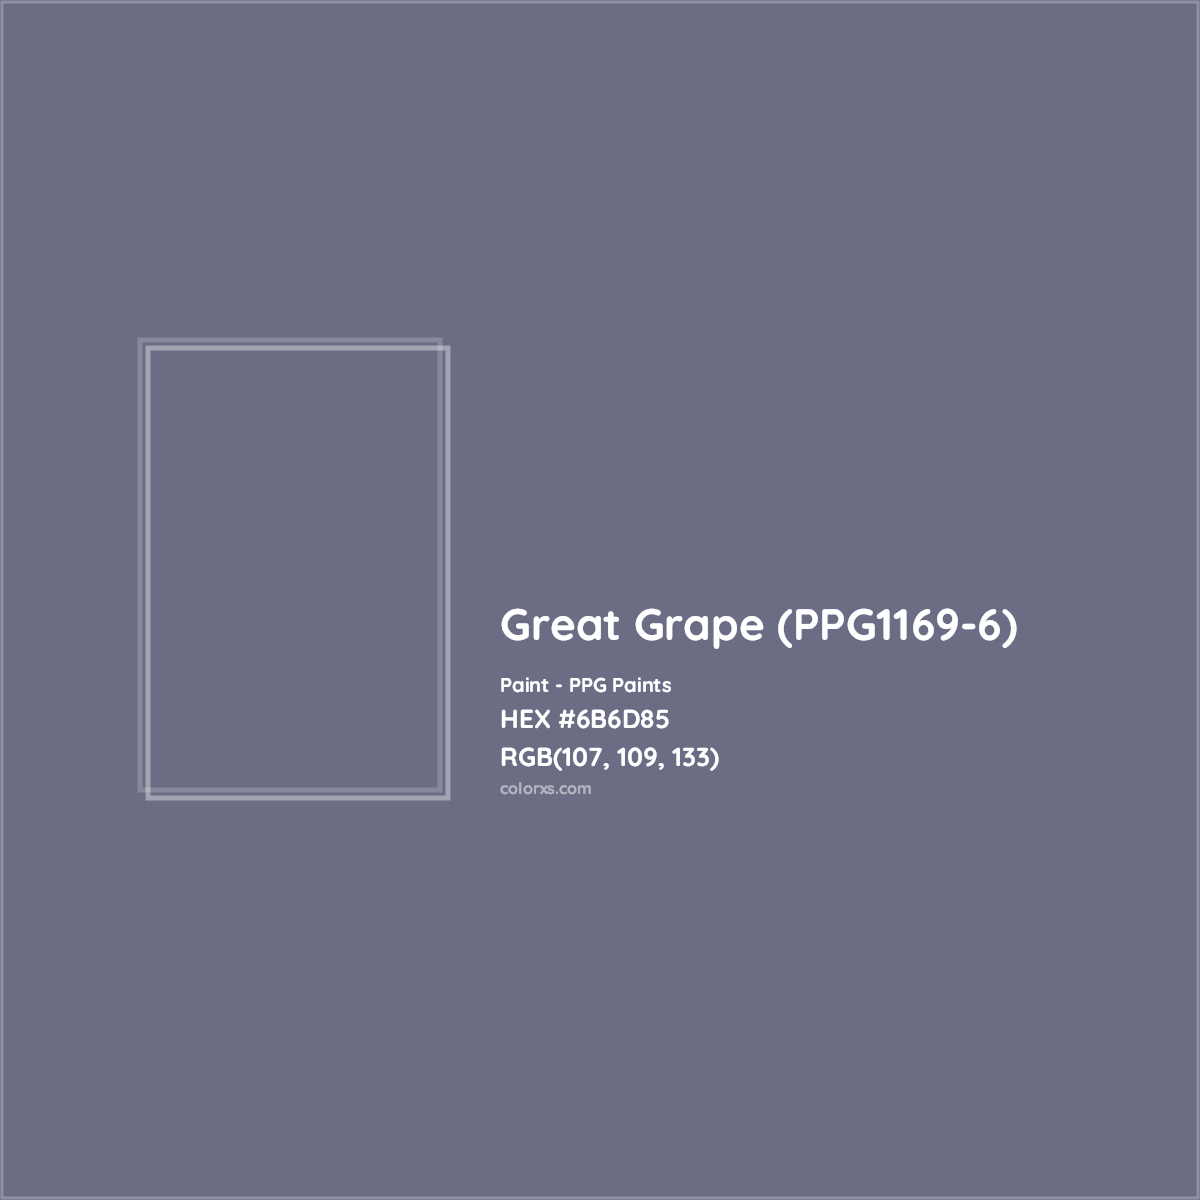 HEX #6B6D85 Great Grape (PPG1169-6) Paint PPG Paints - Color Code